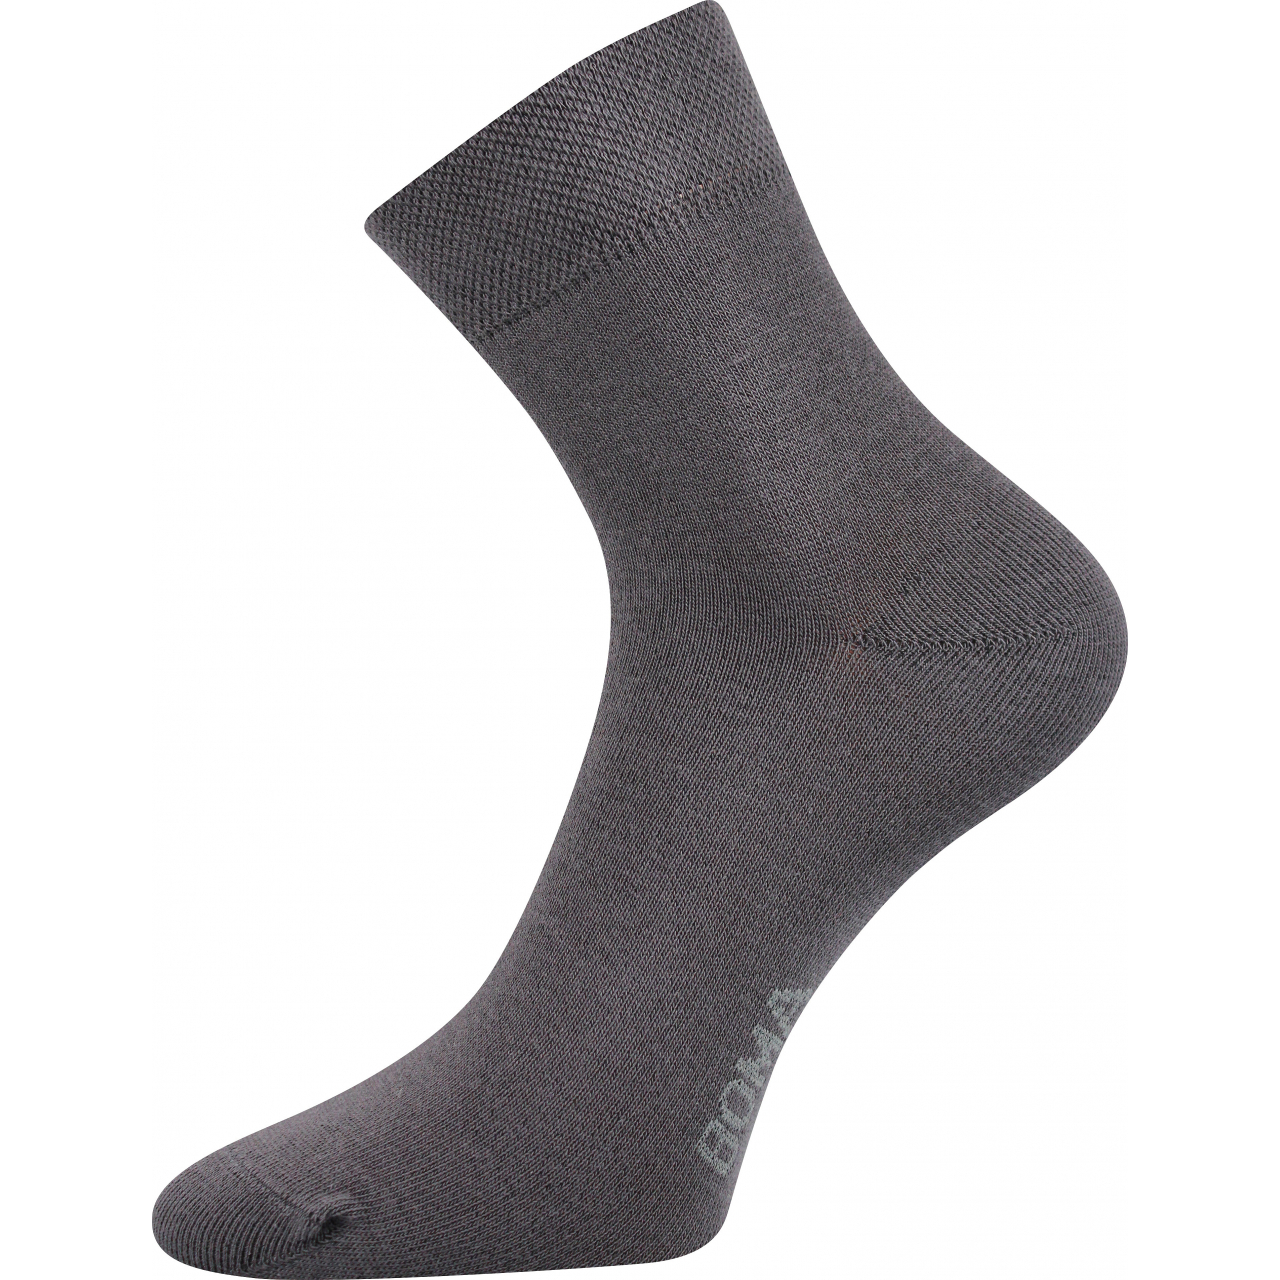 Ponožky unisex klasické Boma Zazr - šedé, 39-42